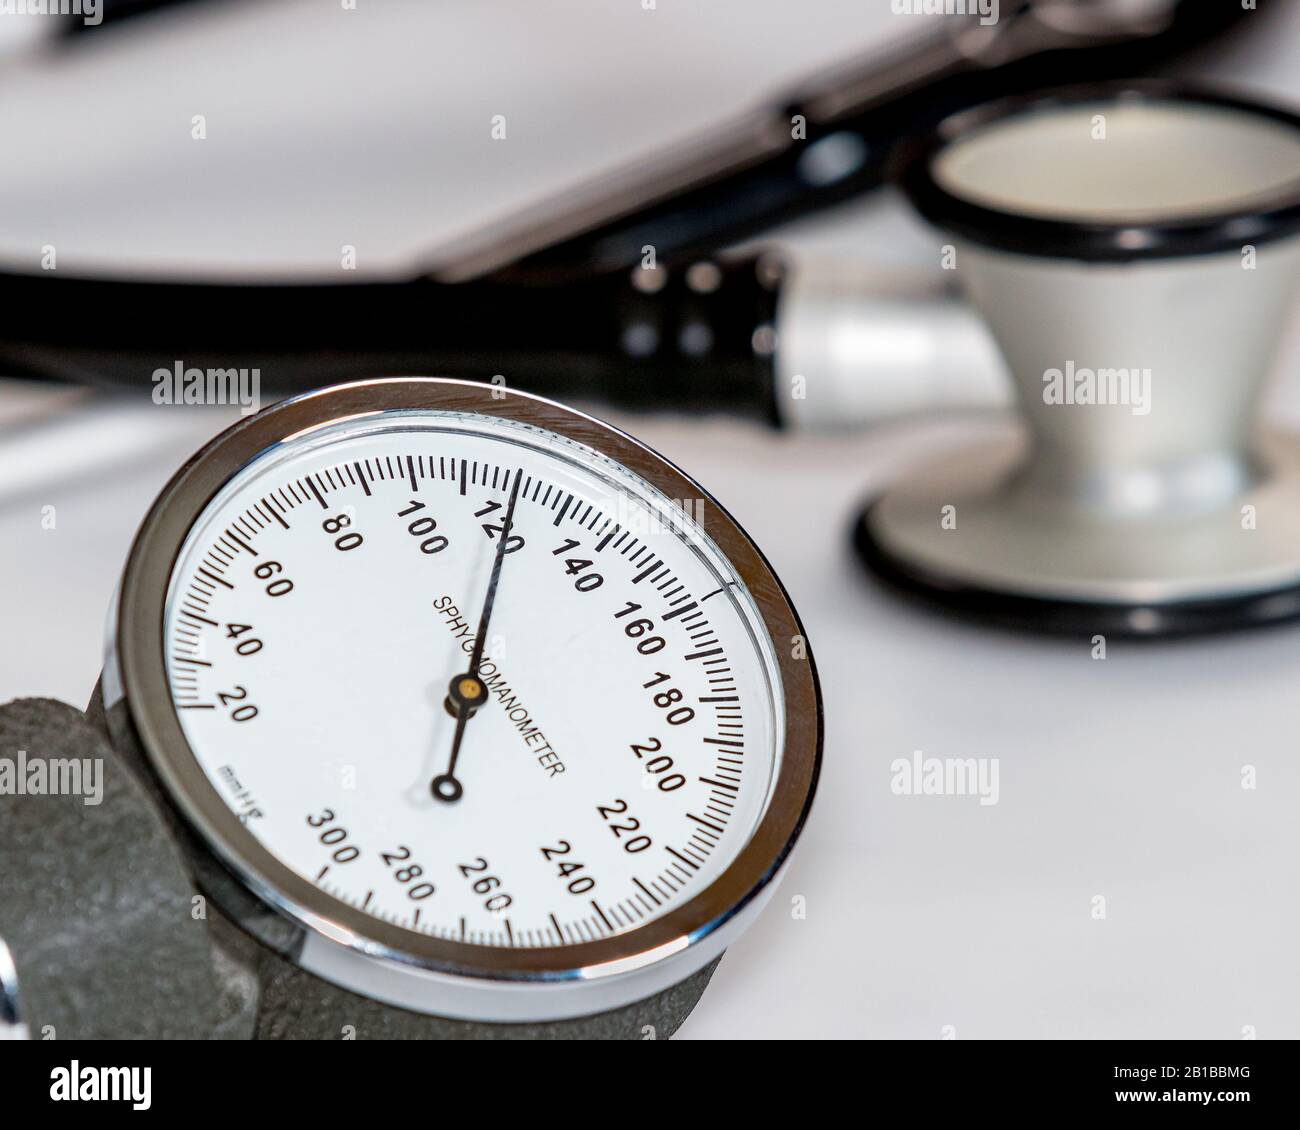 Ostruzione del manometro della pressione sanguigna con una lettura sistolica normale di 120 mmHg. Stetoscopio in background. Foto Stock